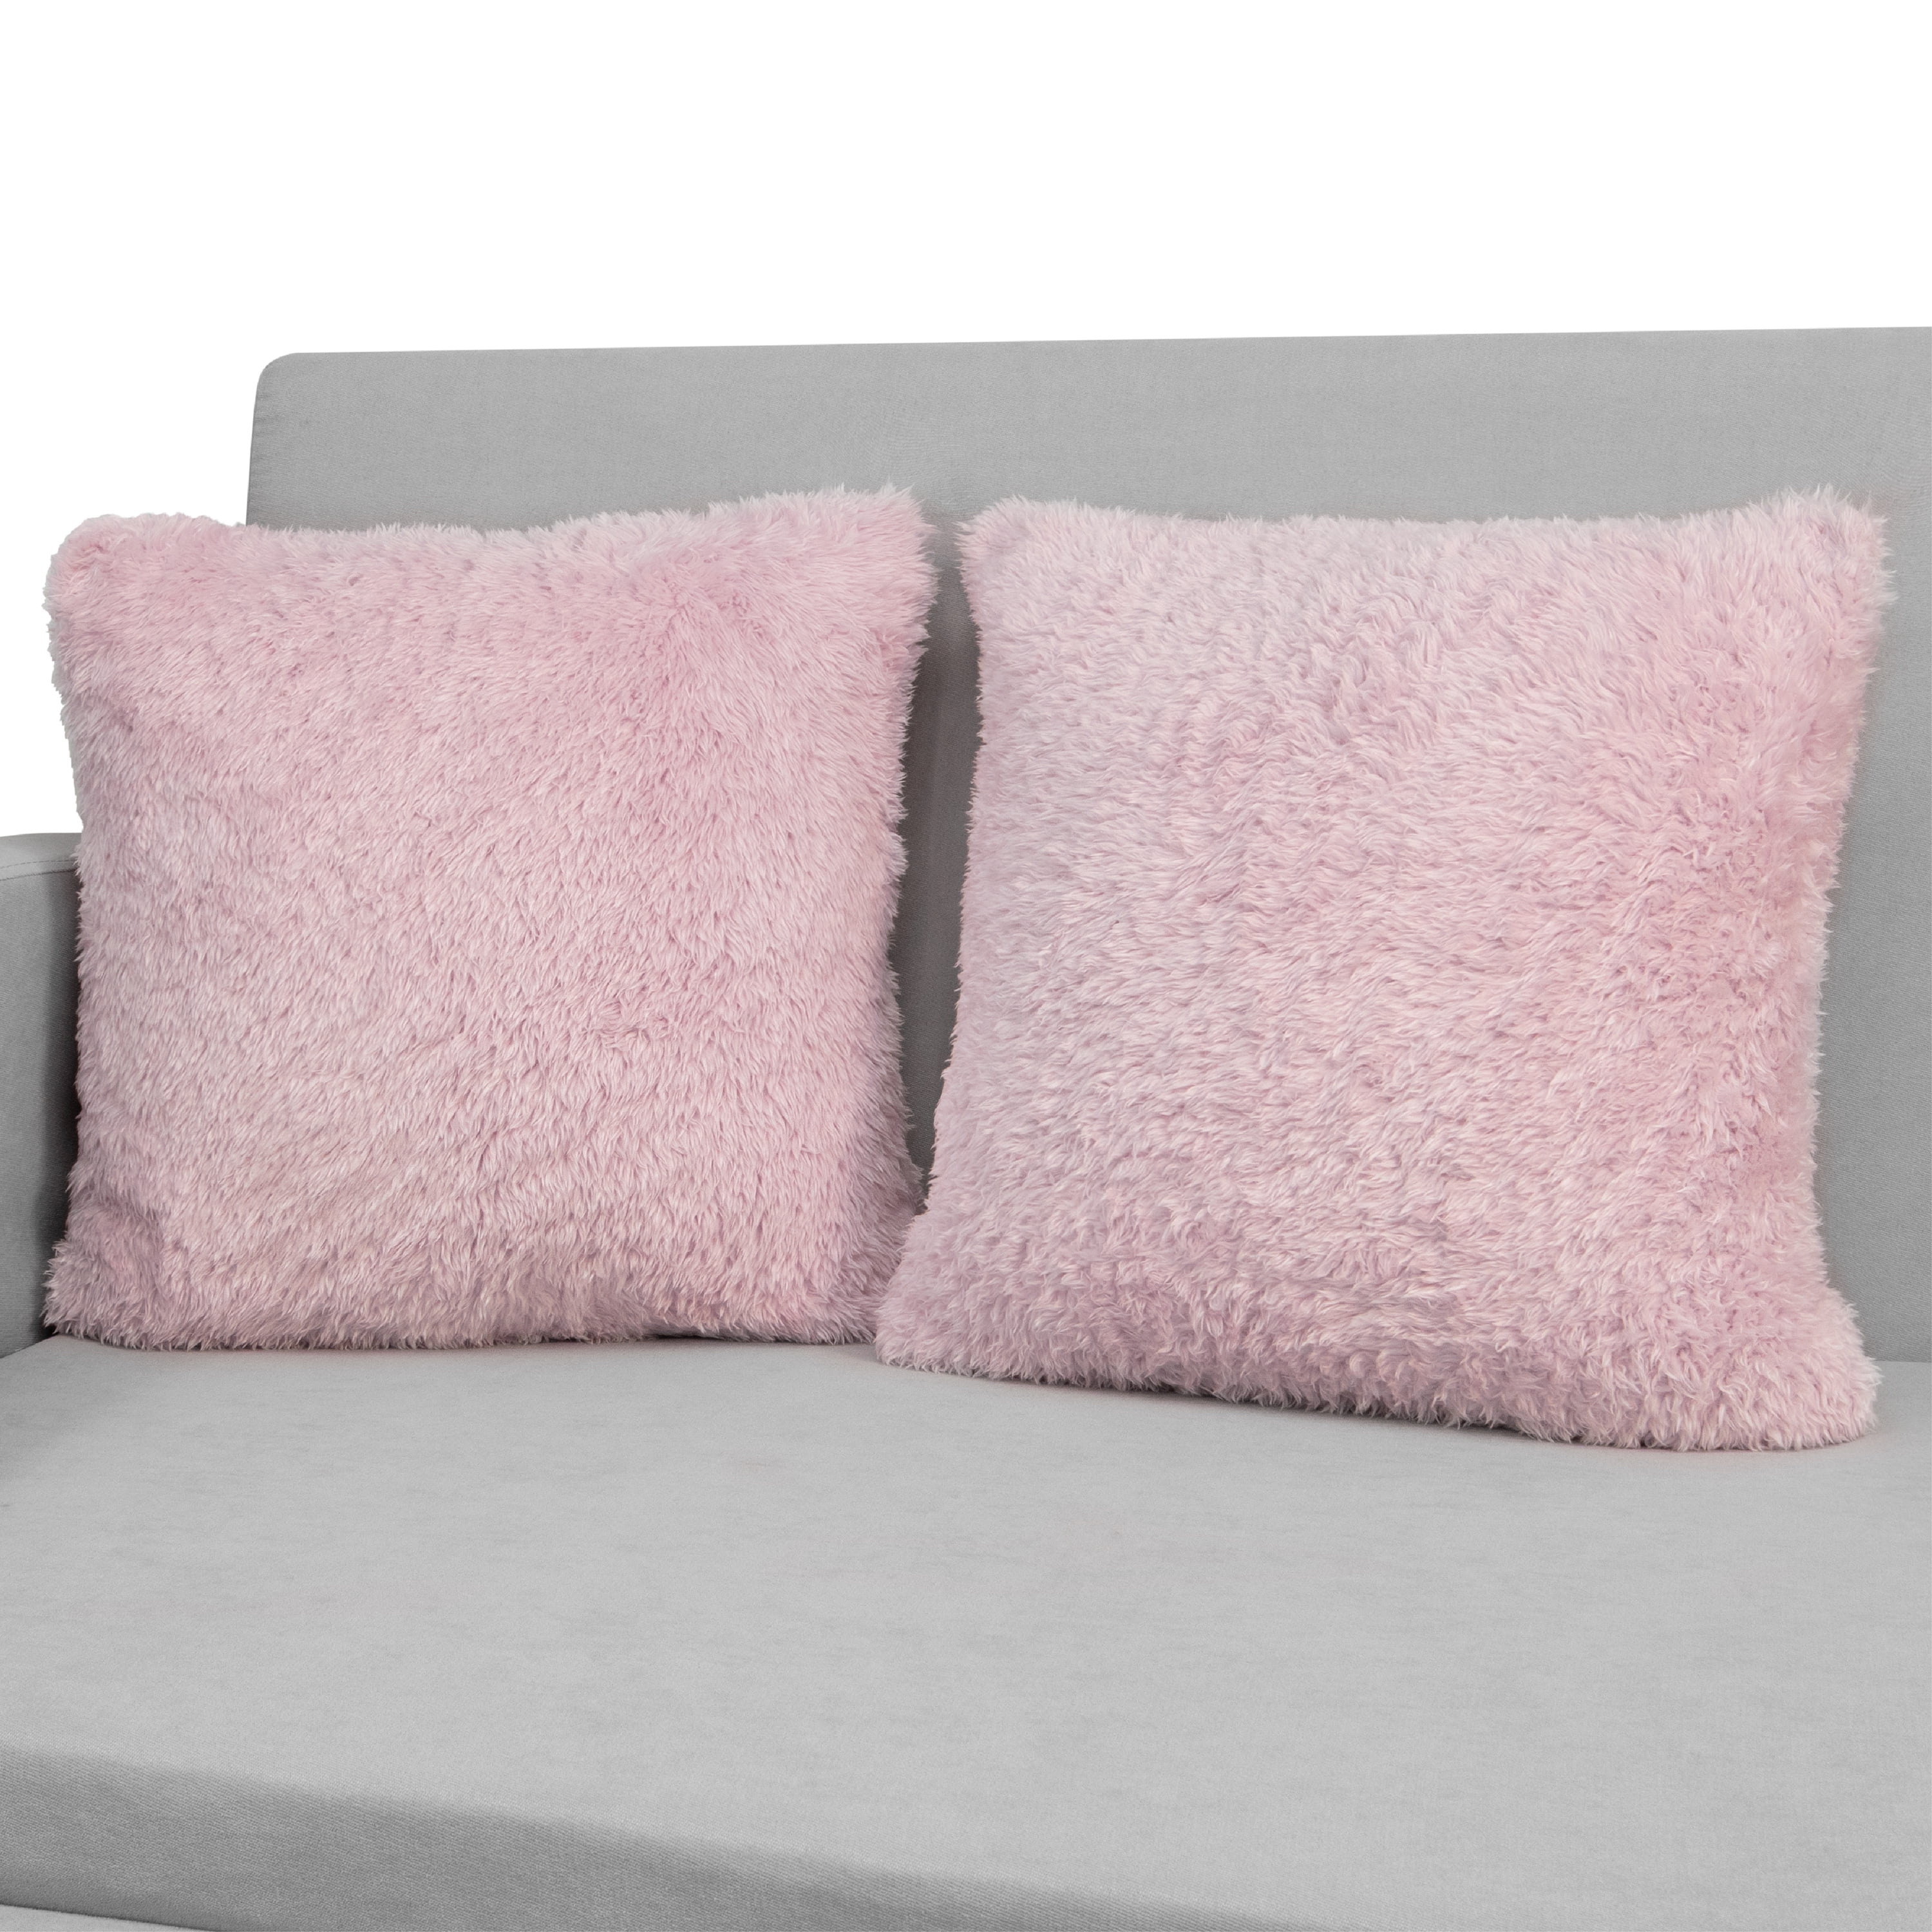 18" Soft French Velvet Feel Cushion Cover or Filled Blush Pink 45cm x 45cm 